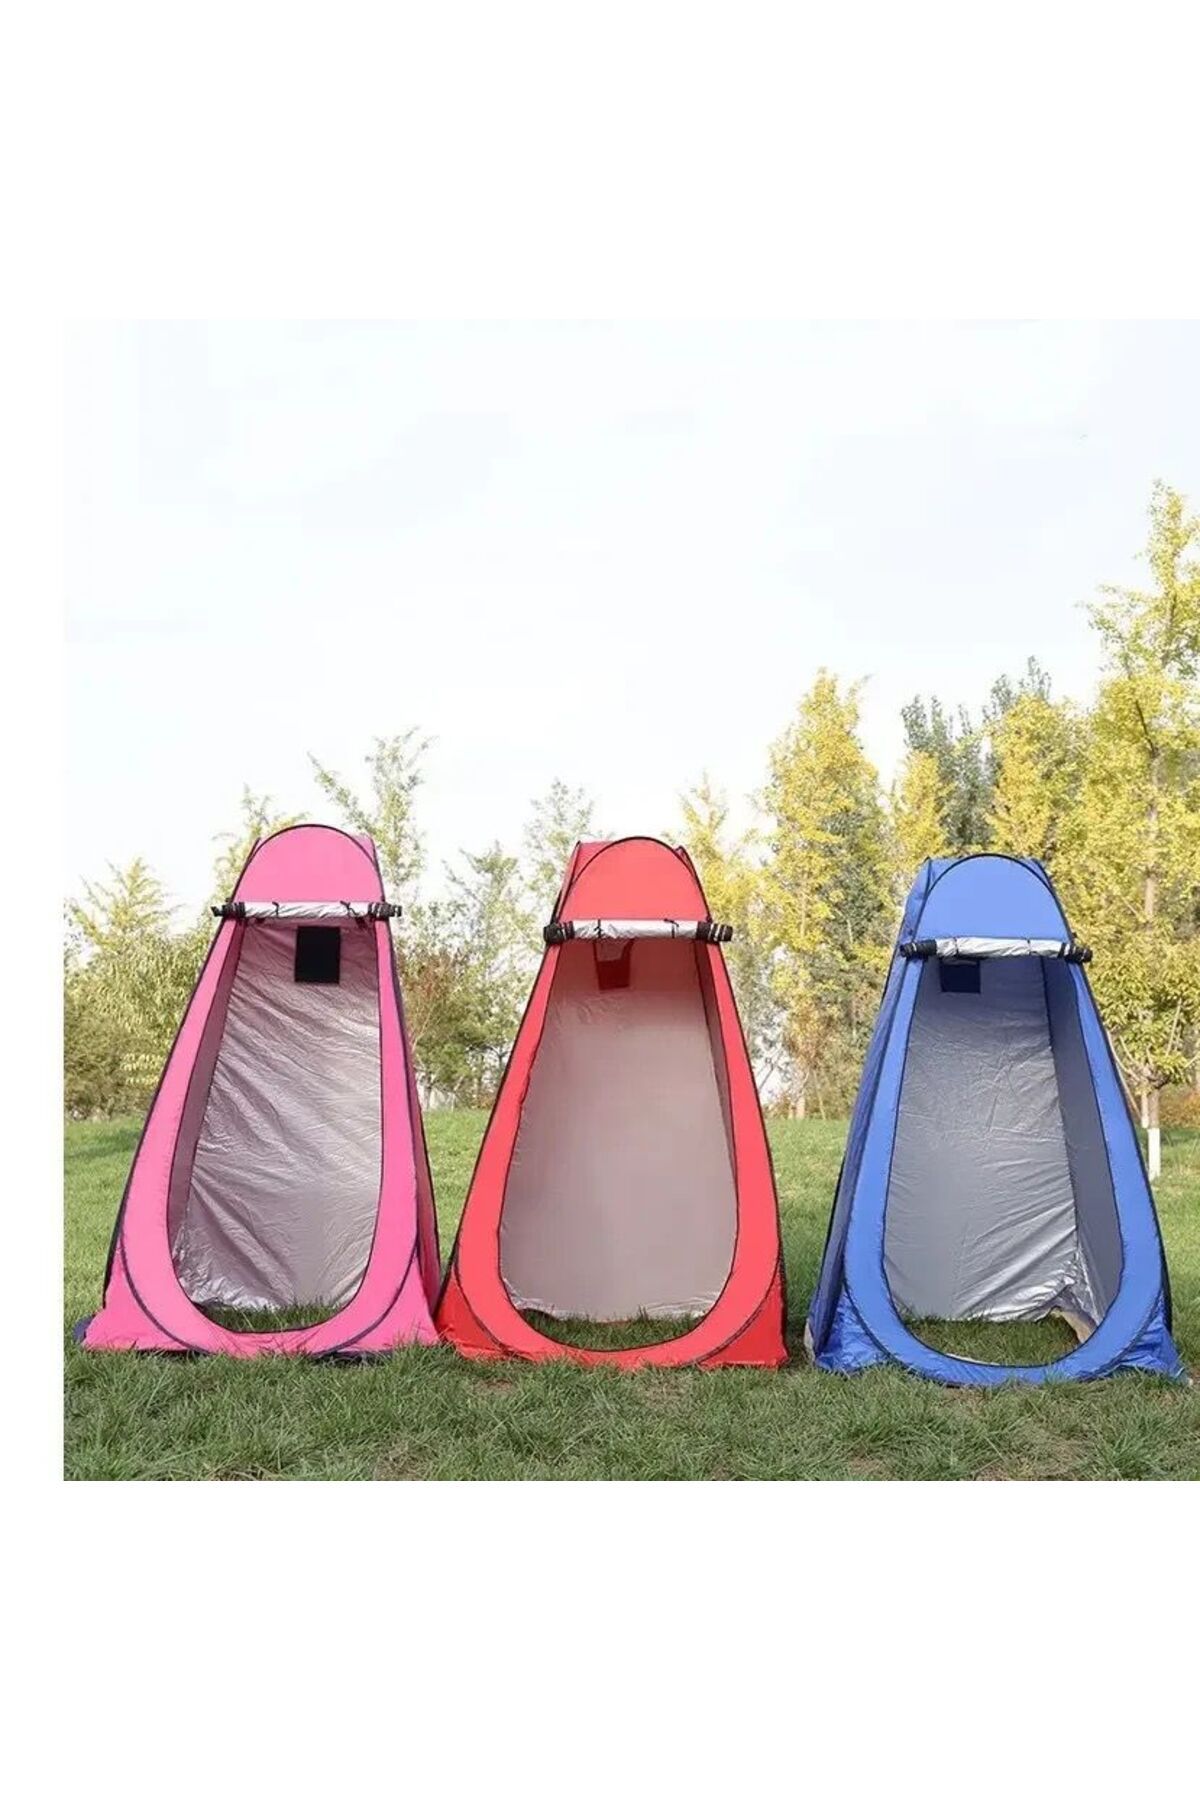 XTRIKE ME Kamp Alanı Otomatik Duş Giyinme Wc Çadırı Fotoğrafcı Prova Kabini Çadırı Kamp Çadırı 120*120*190 CM